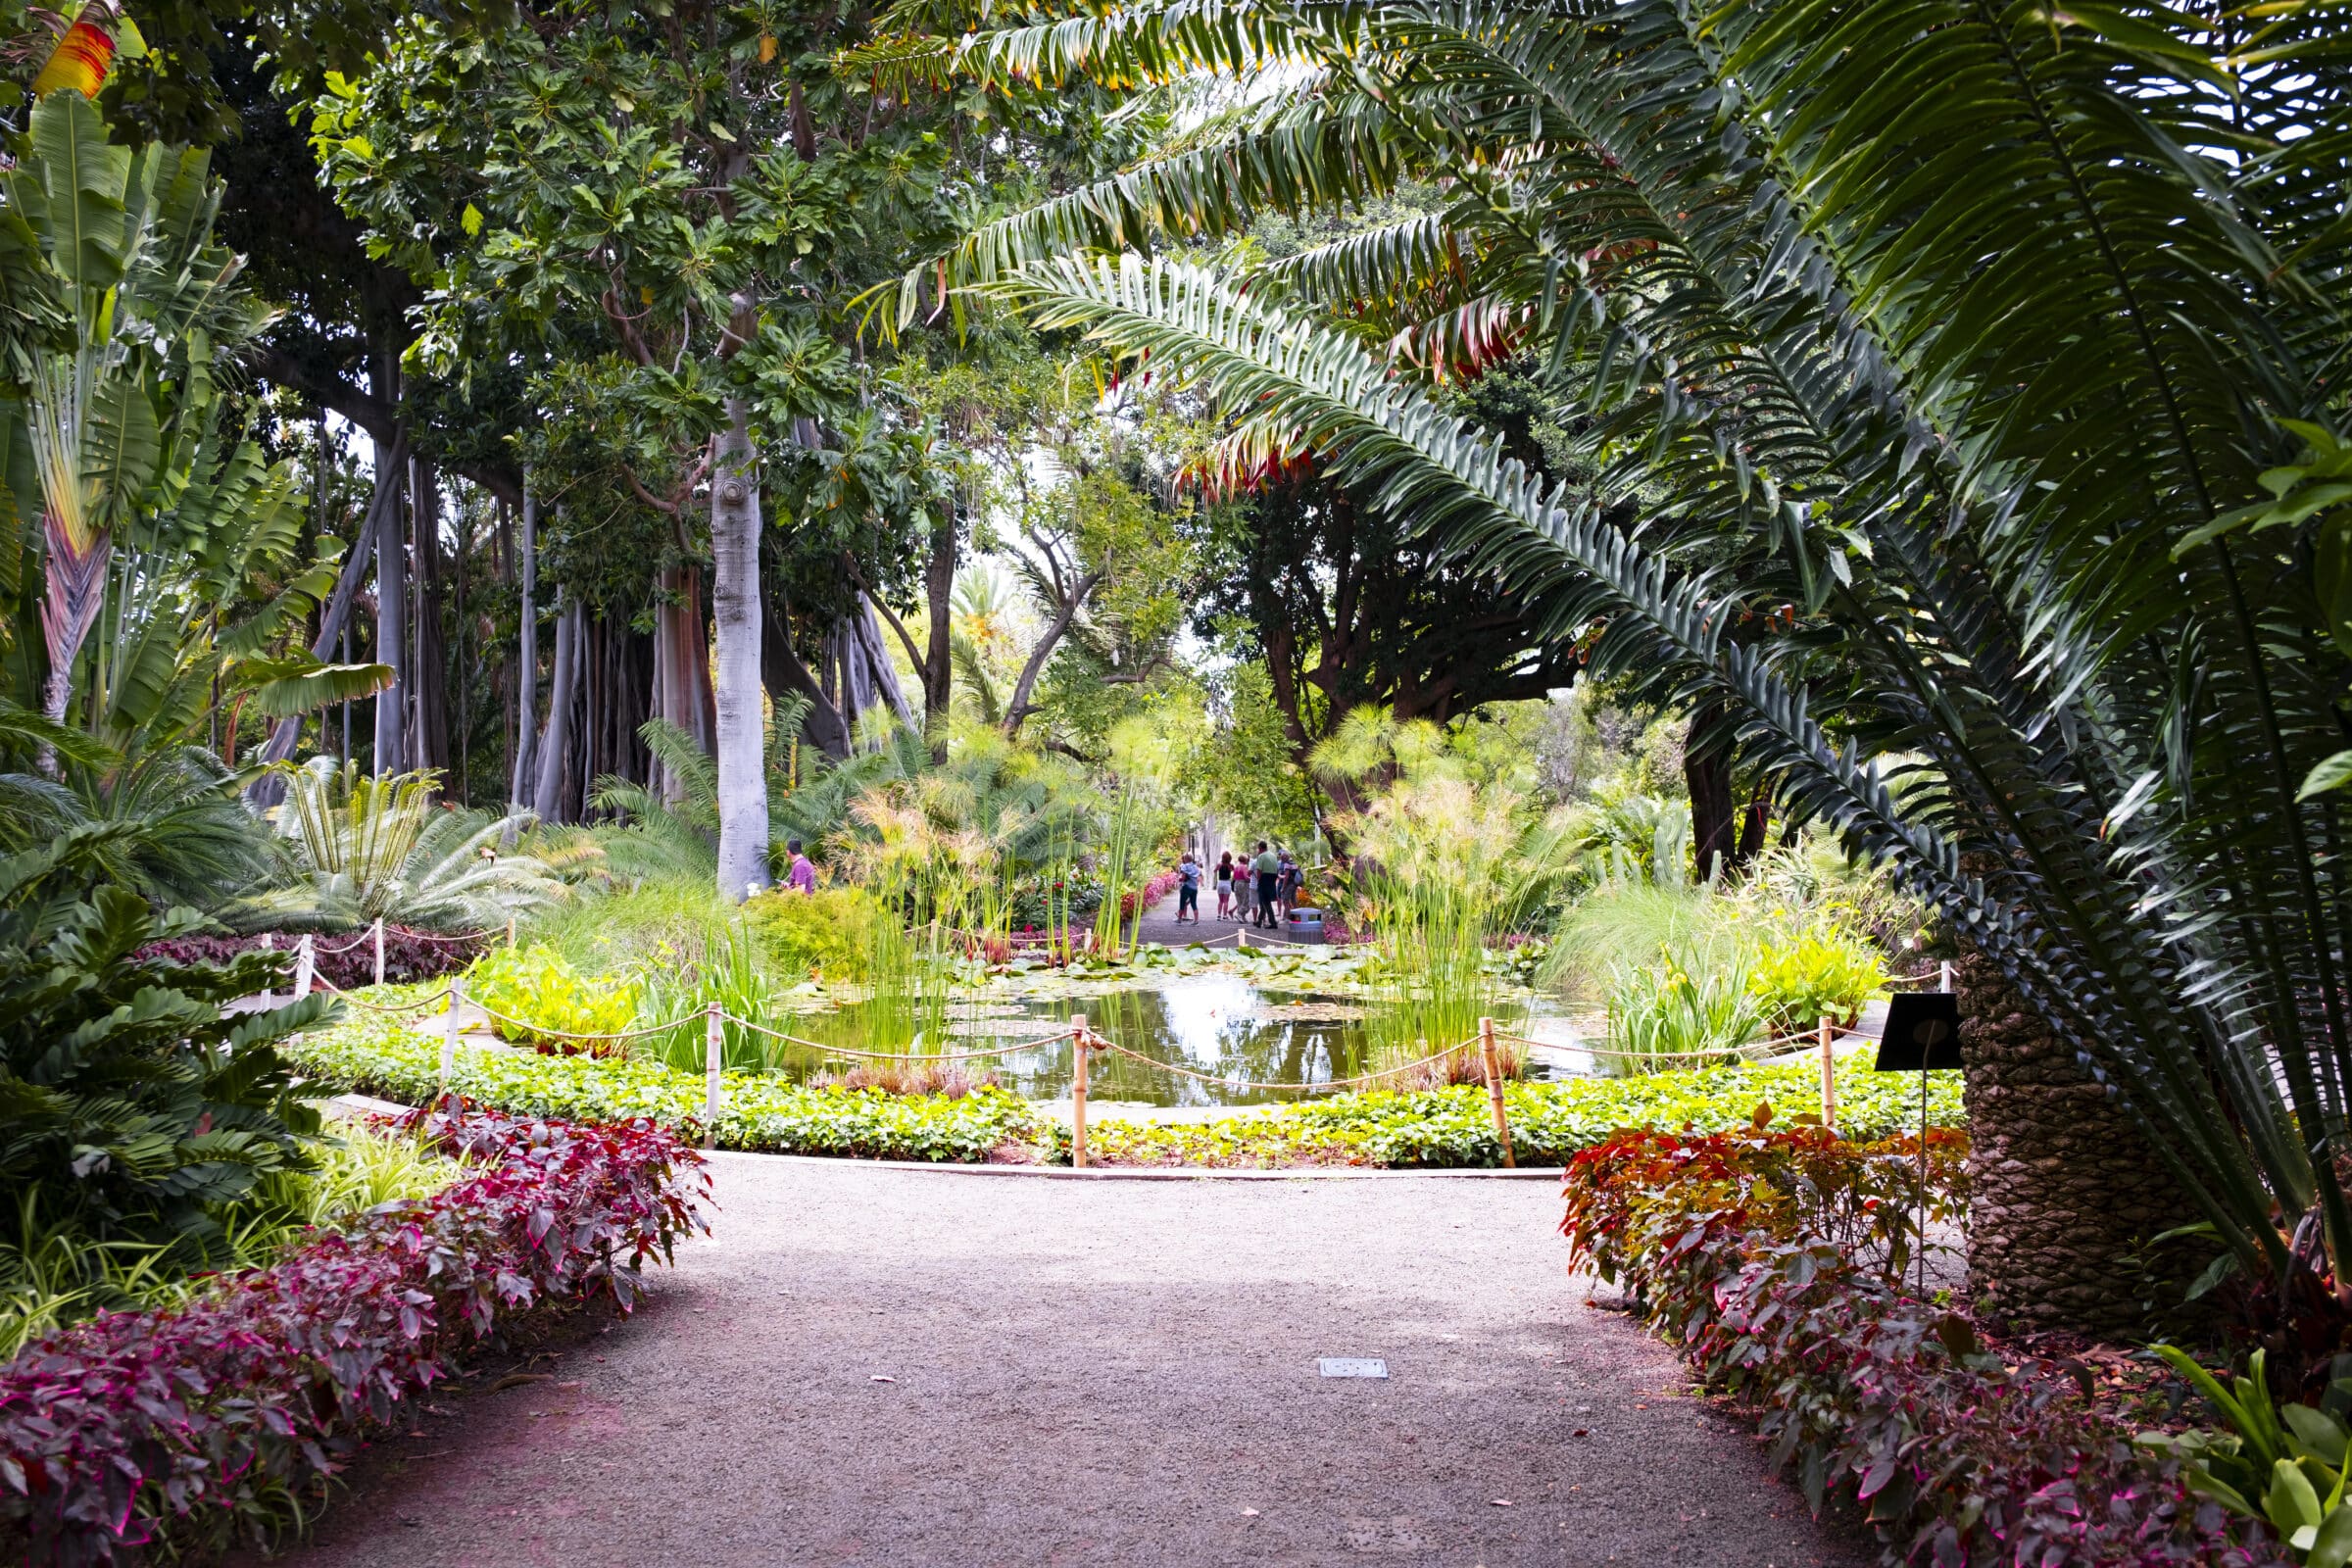 The botanical garden